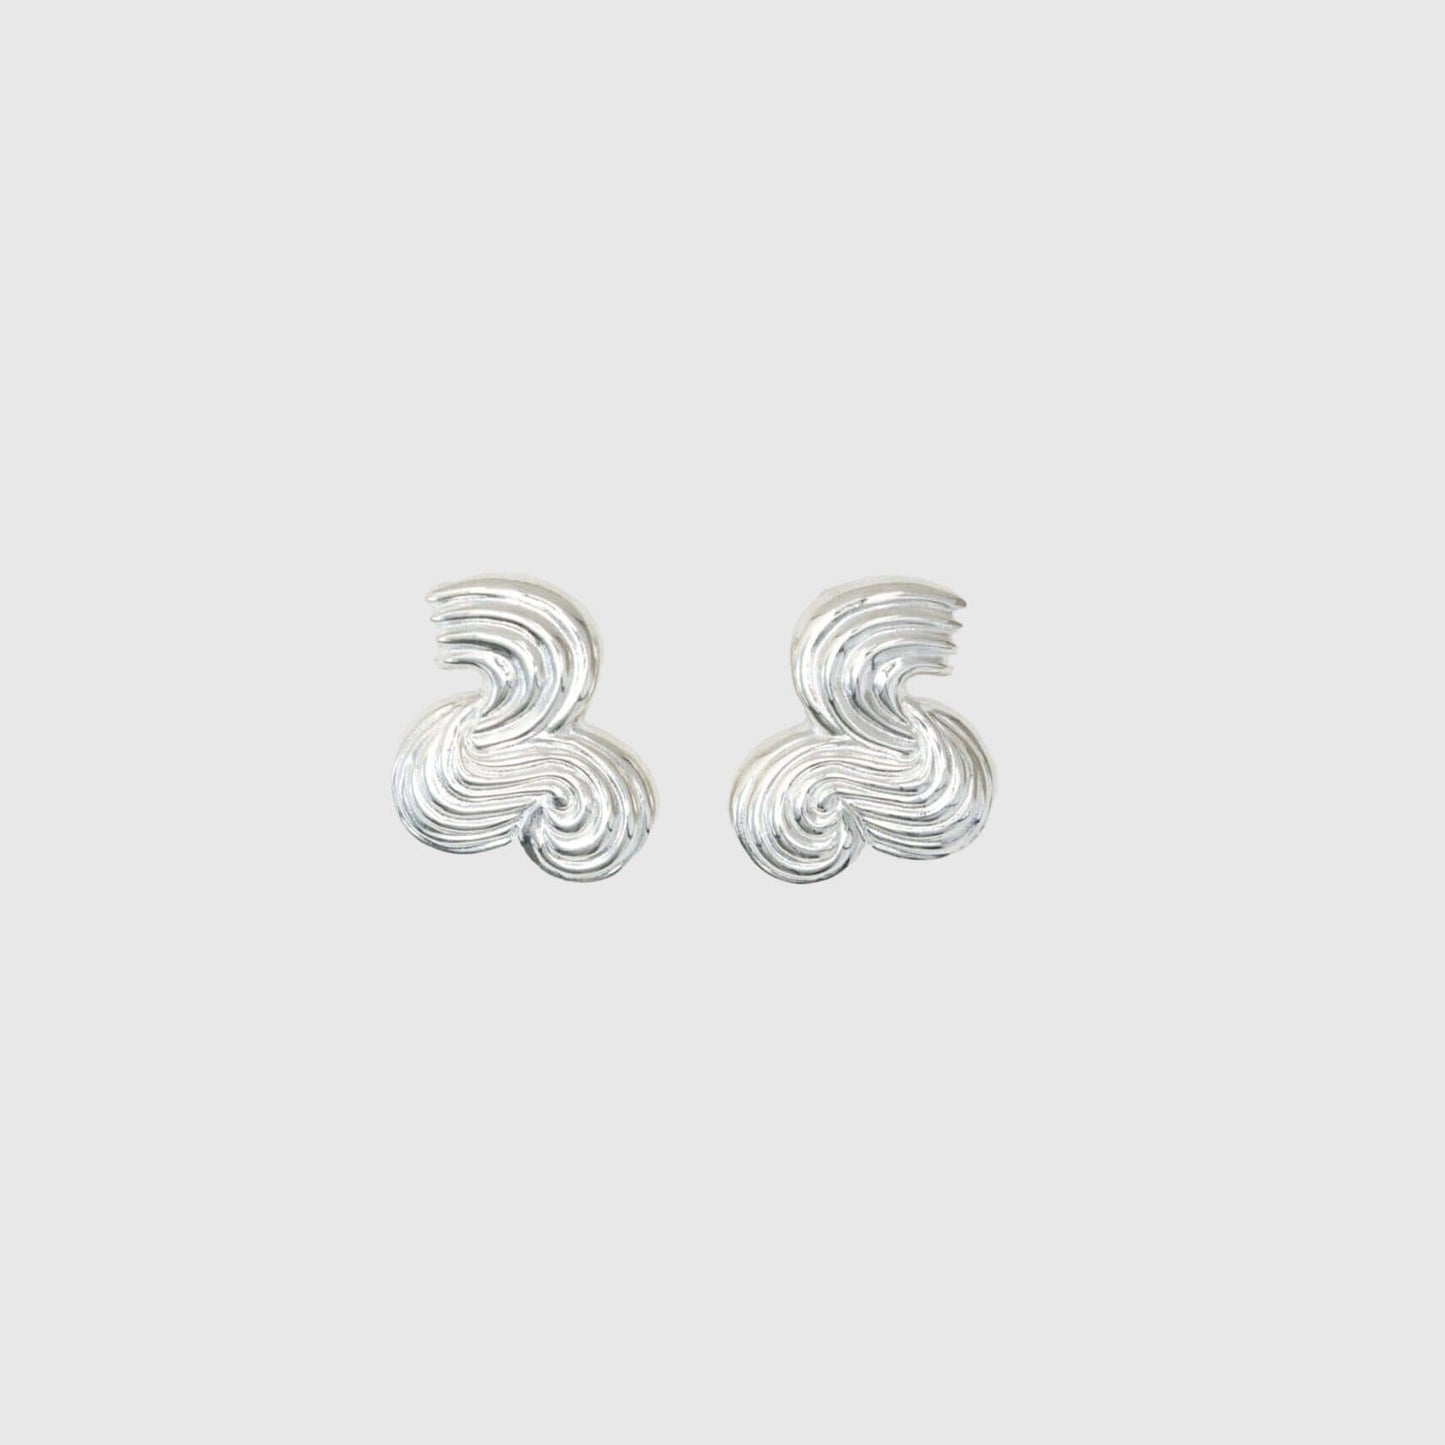 Aur Studio Betzy Earrings - Silver Jewellery Aur Studio 